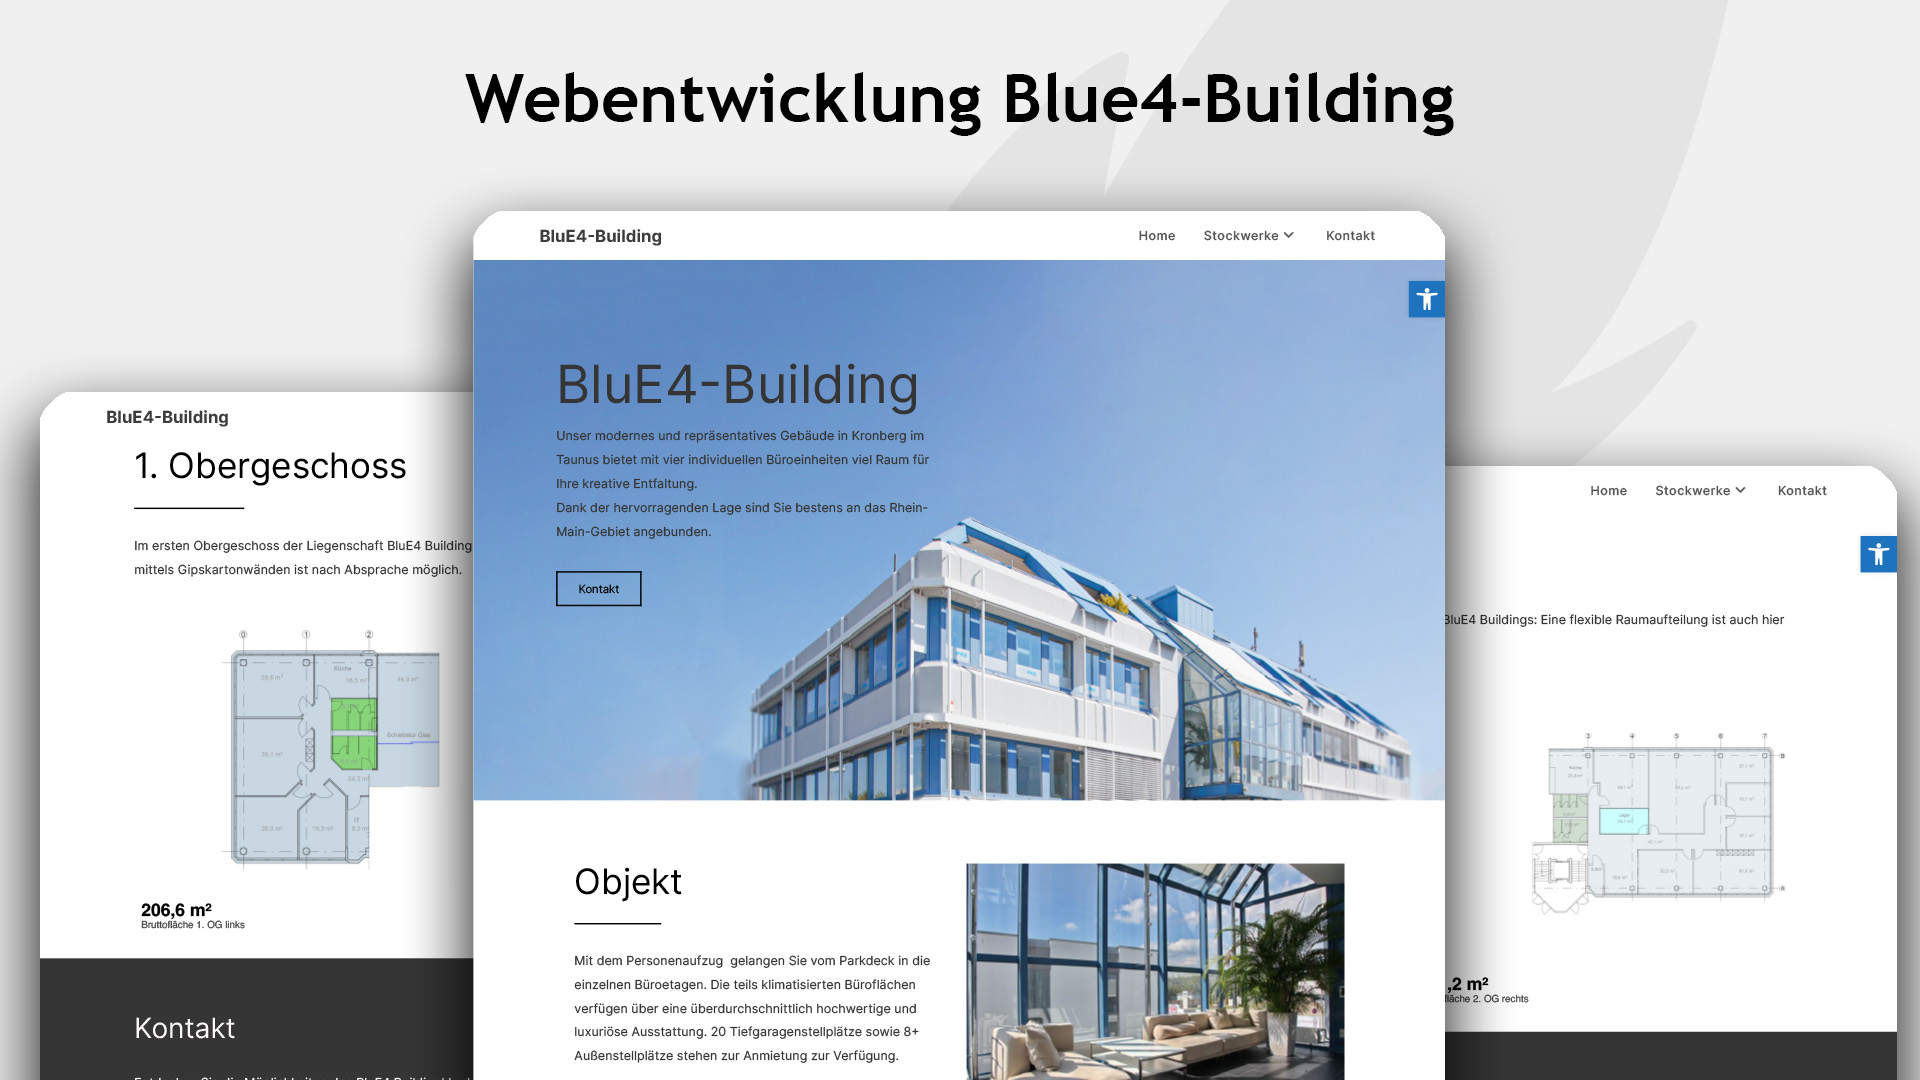 Mehr über den Artikel erfahren Webentwicklung für Blue4-Building